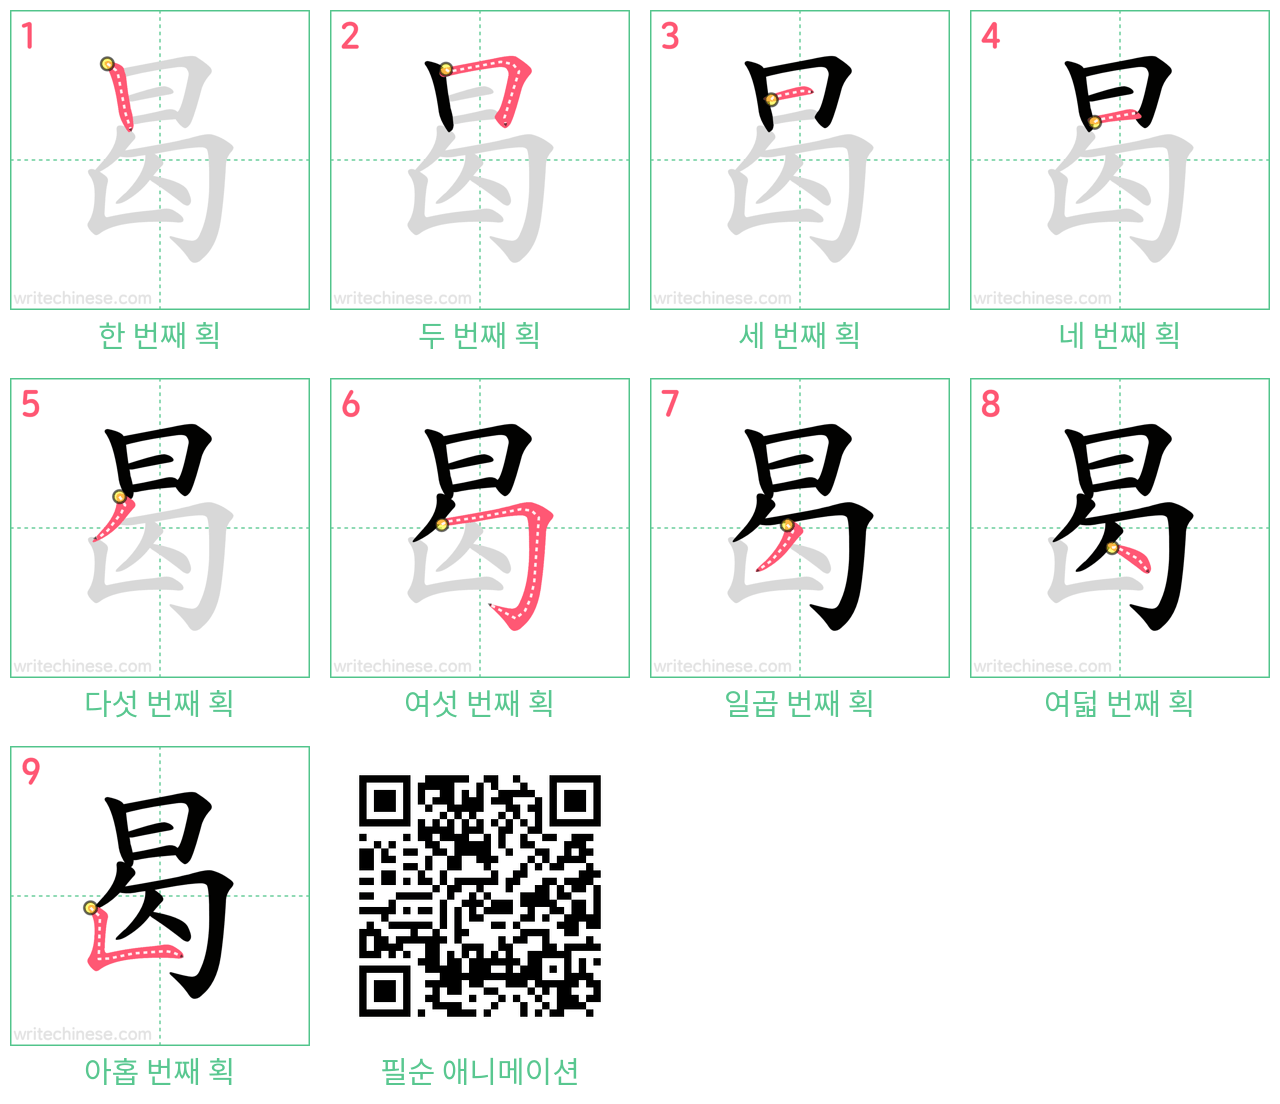 曷 step-by-step stroke order diagrams